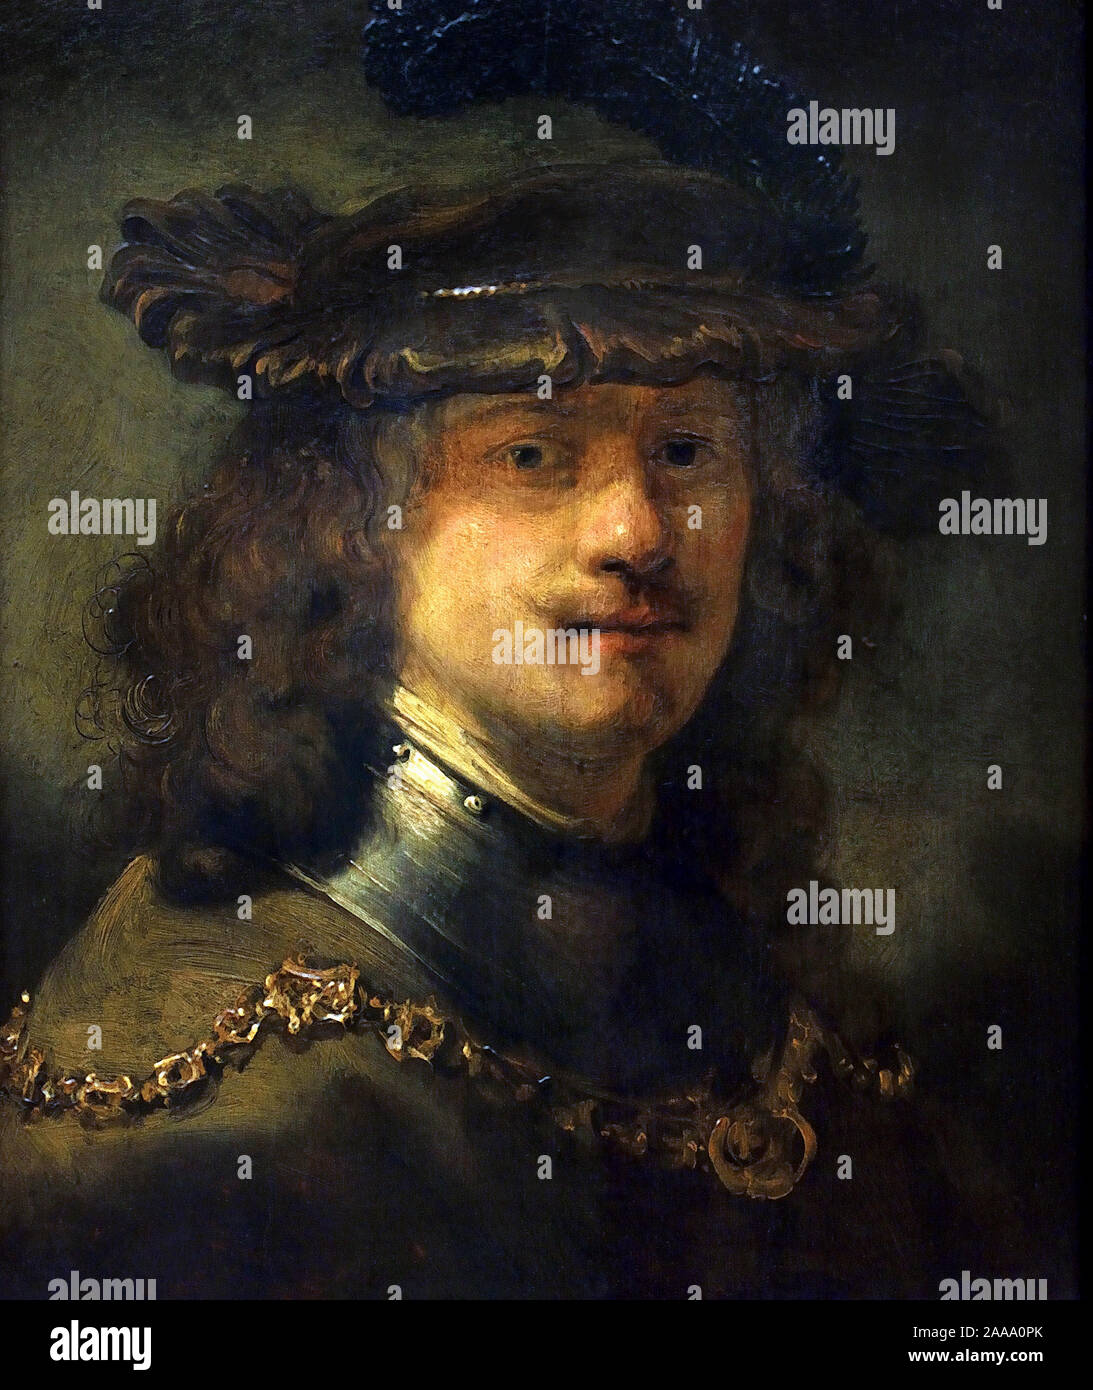 Rembrandt mit samt Baskenmütze und eisernen Hals Kette 1633-1634 Rembrandt Harmenszoon van Rijn von Thomas Niemann Flinck 1615-1660. Niederländisch, die Niederlande, Holland. Stockfoto